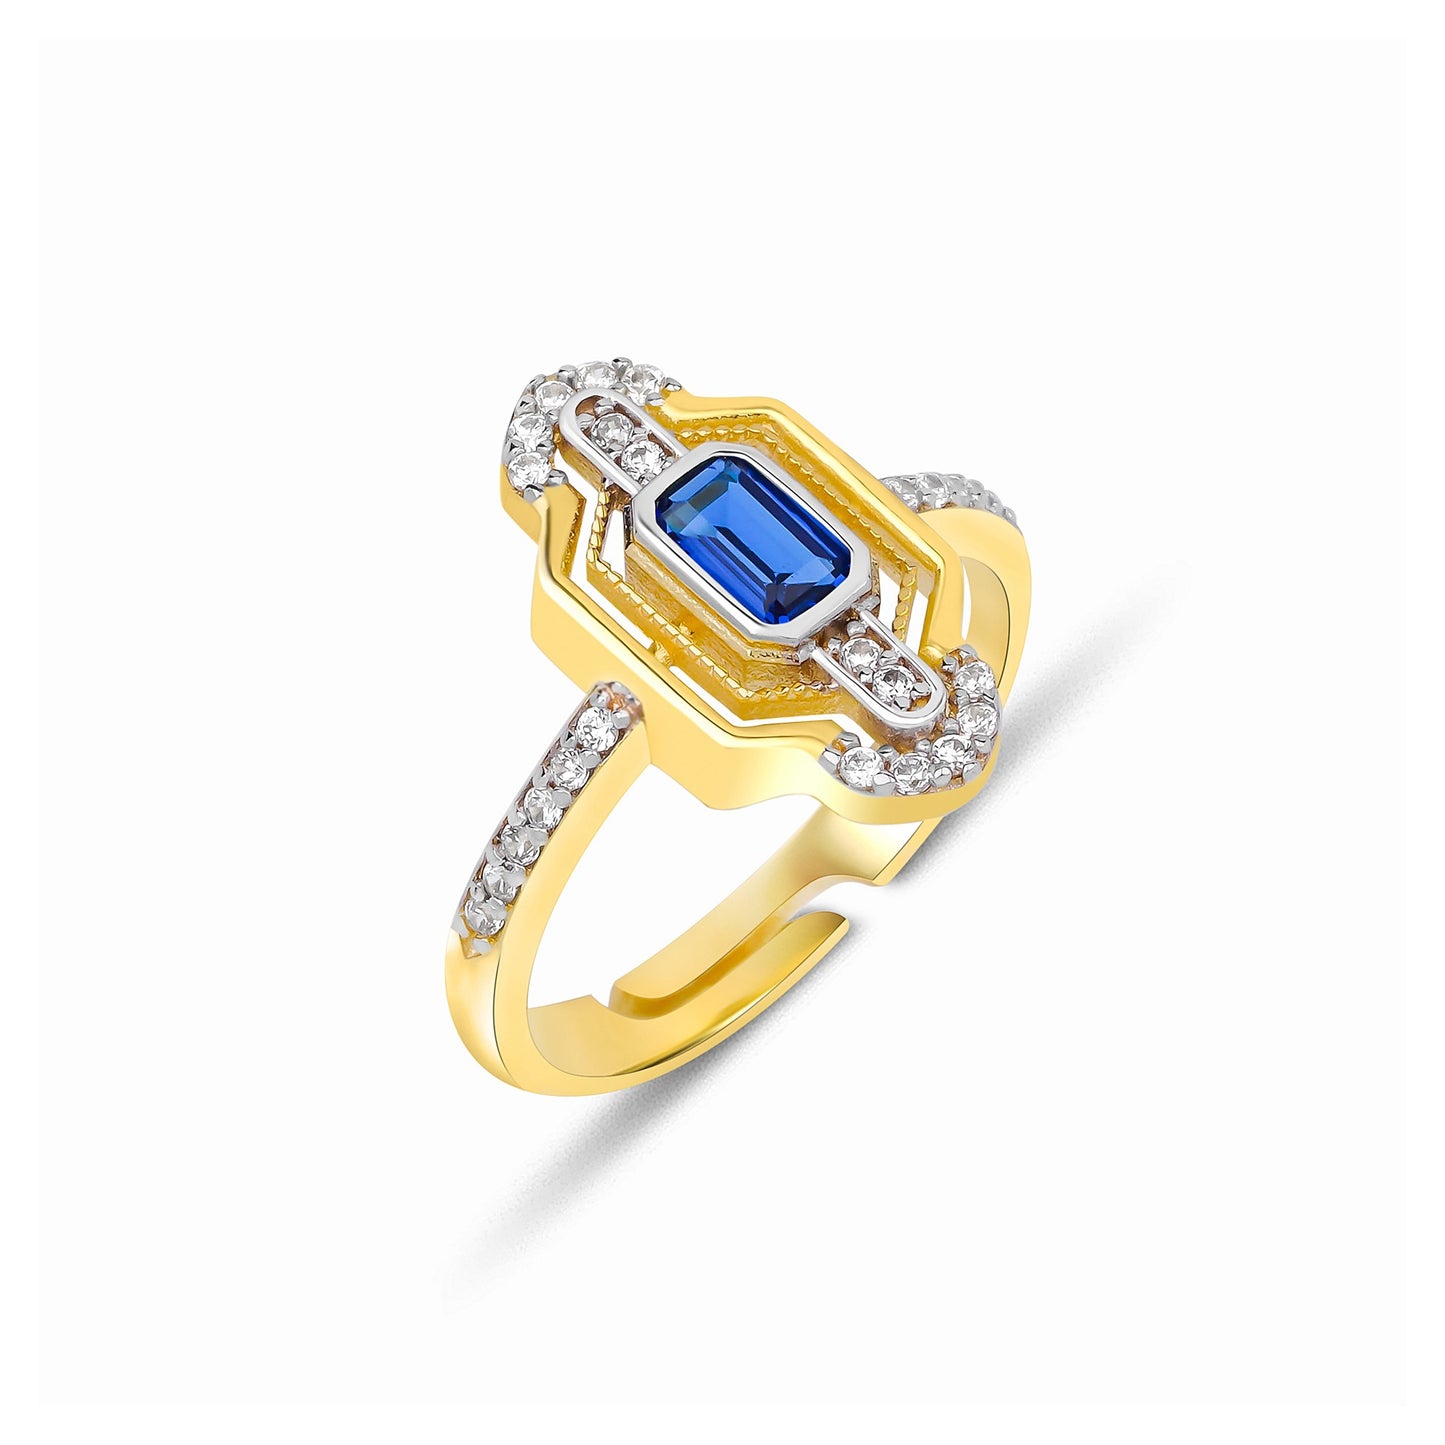 Design Baguette Stone Adjustable Silver Ring